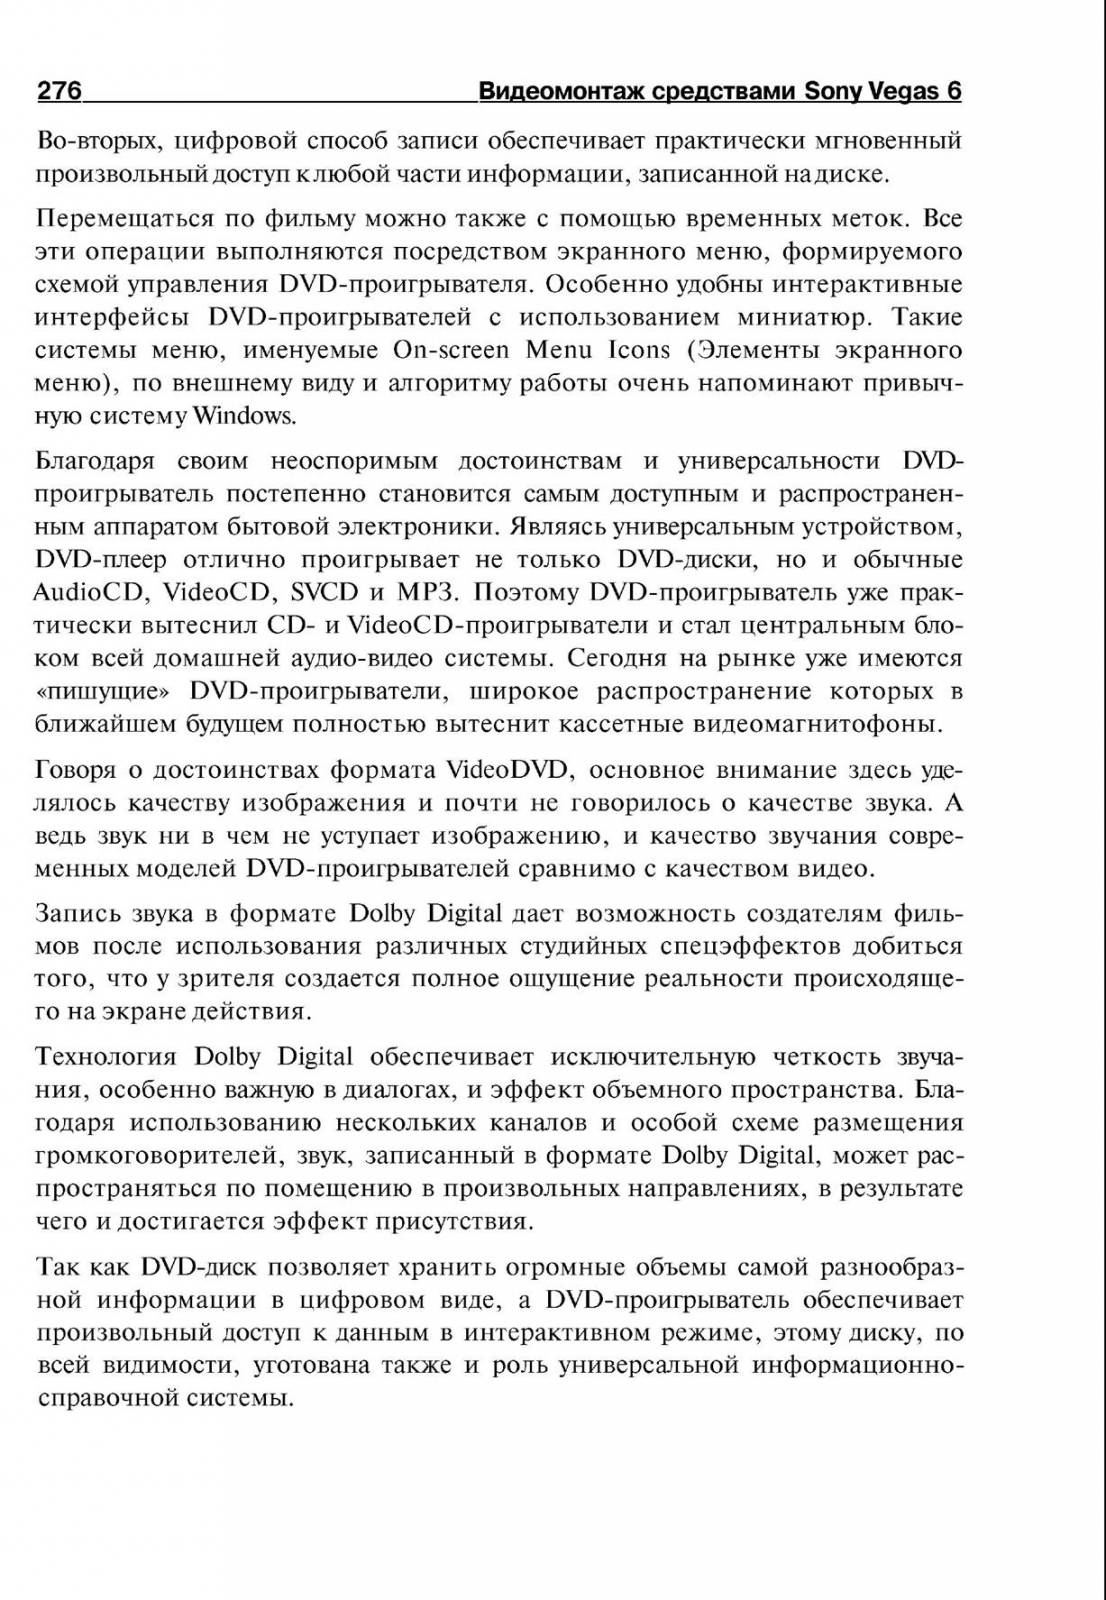 http://redaktori-uroki.3dn.ru/_ph/14/62331762.jpg